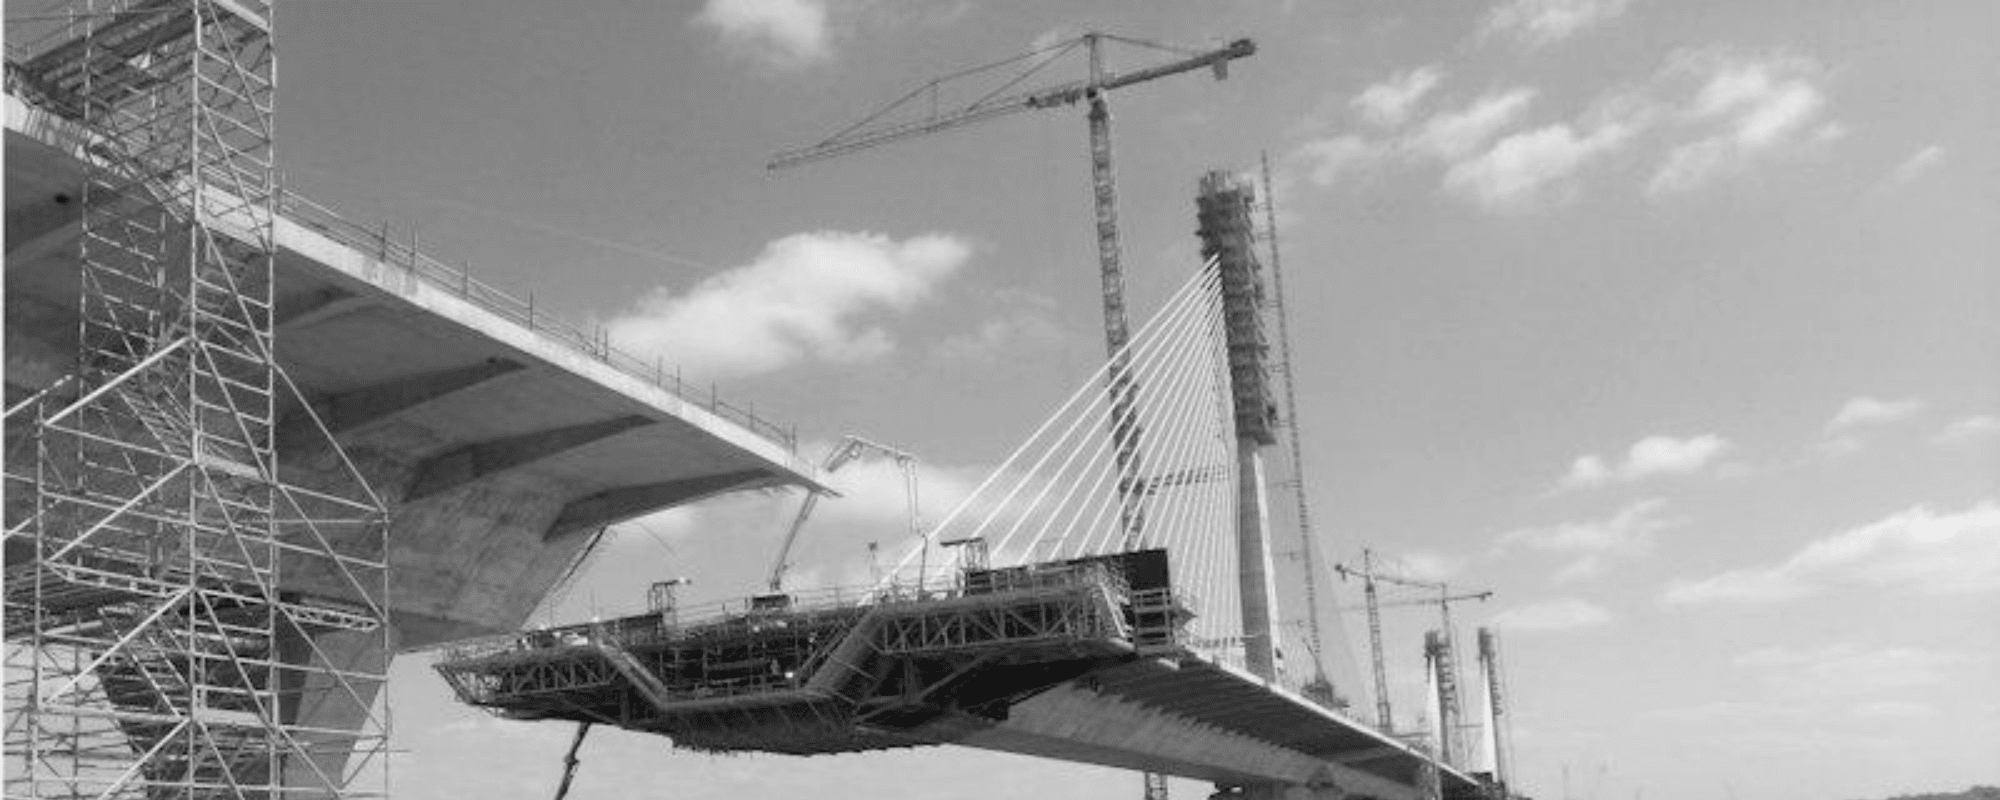 Bridge being built for civil engineering